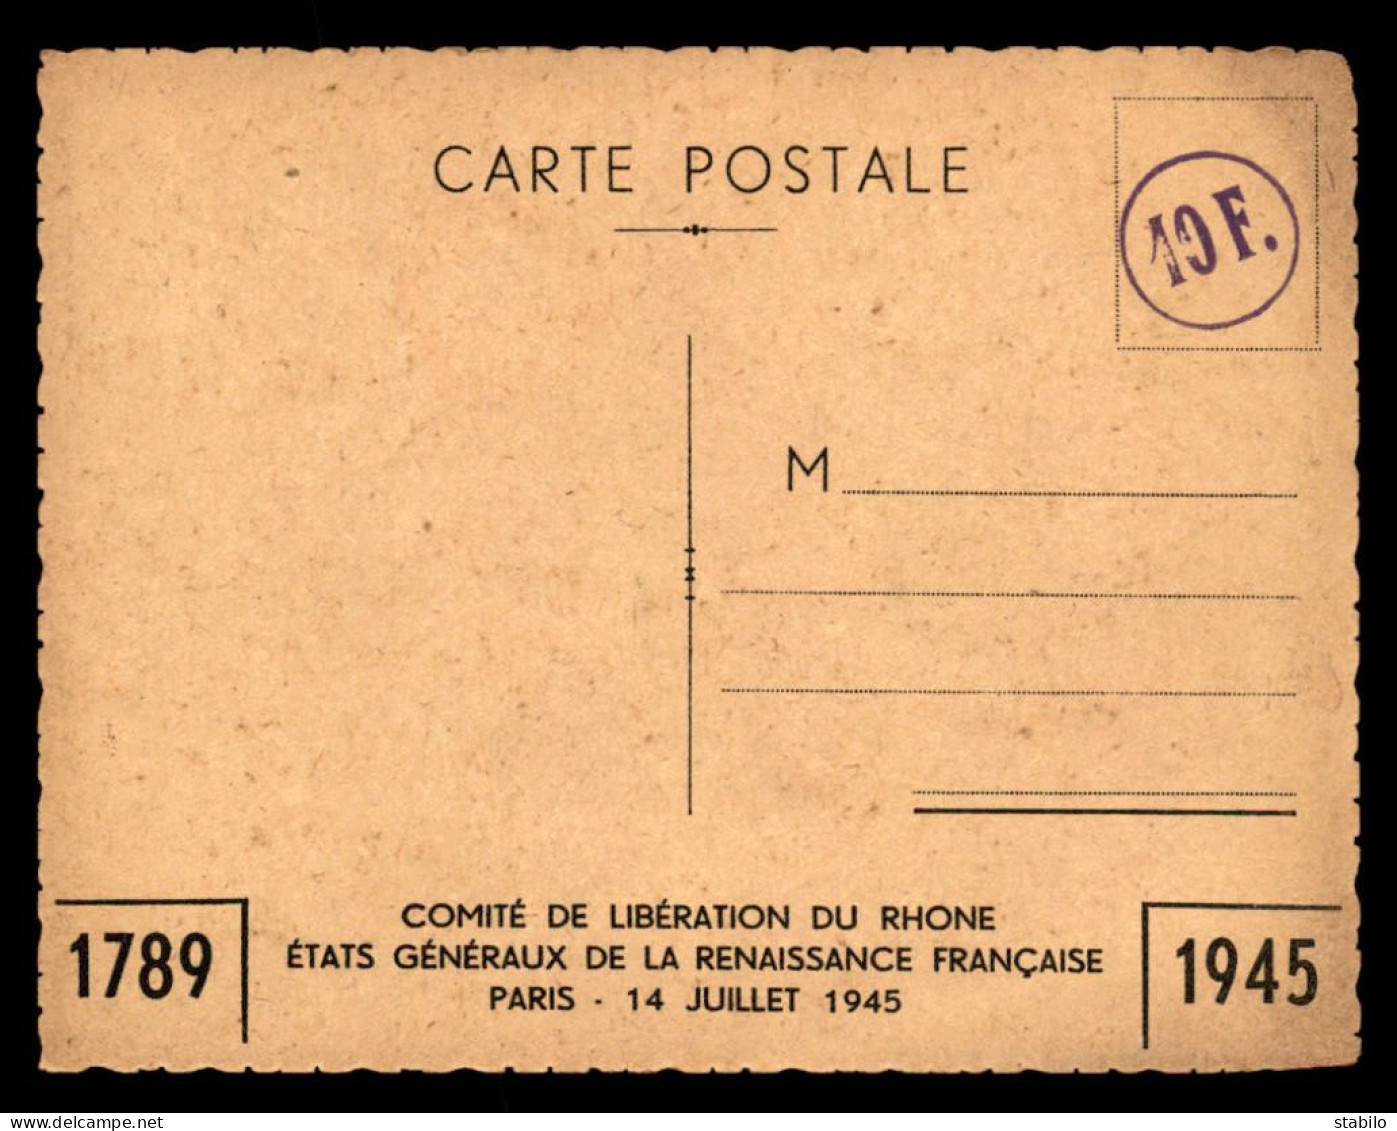 GUERRE 39/45 - ILLUSTRATEURS - KLEBER - ASSISE NATIONALE DE LA PAIX, PARIS 27-28 NOVEMBRE - 1789-1945 - Weltkrieg 1939-45